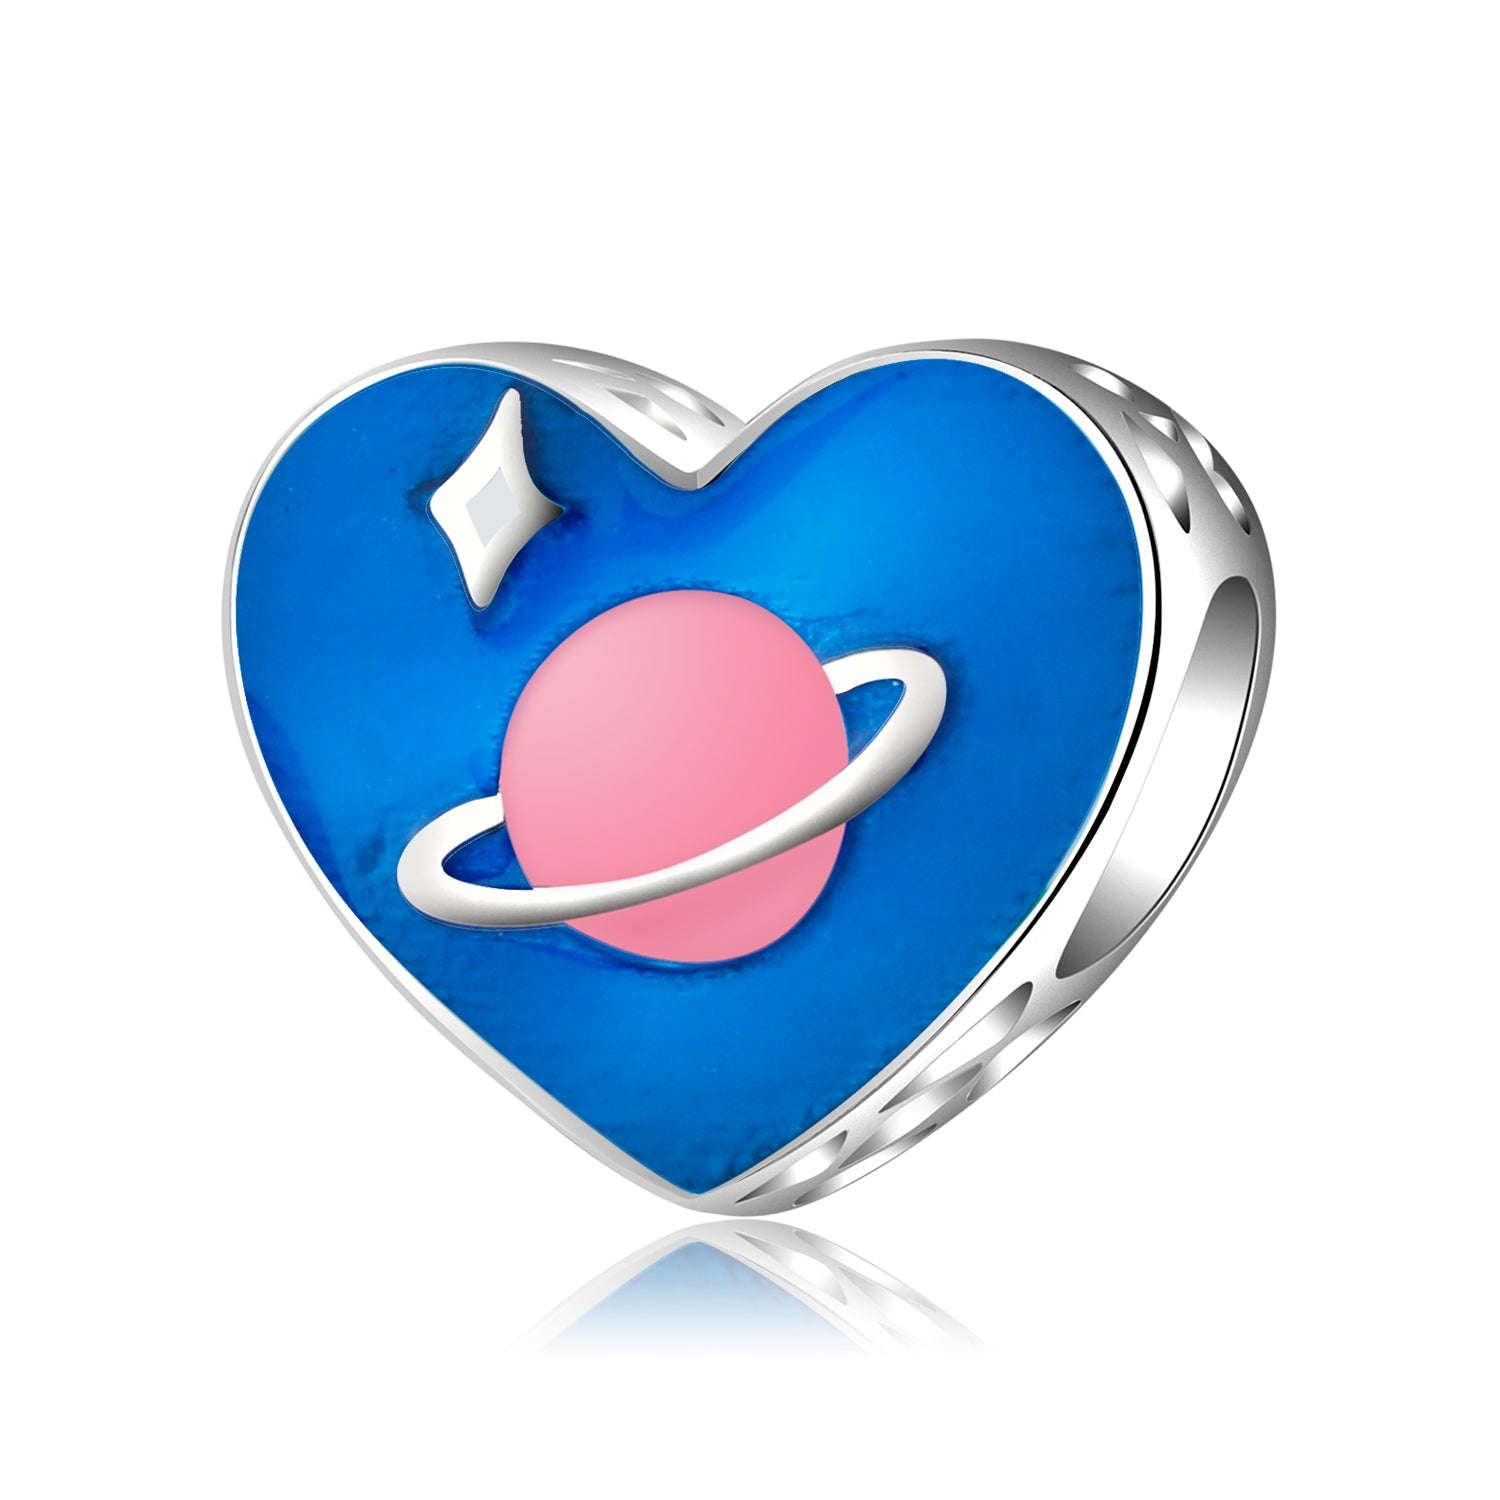 Blaues Herz mit Pinknem Planeten